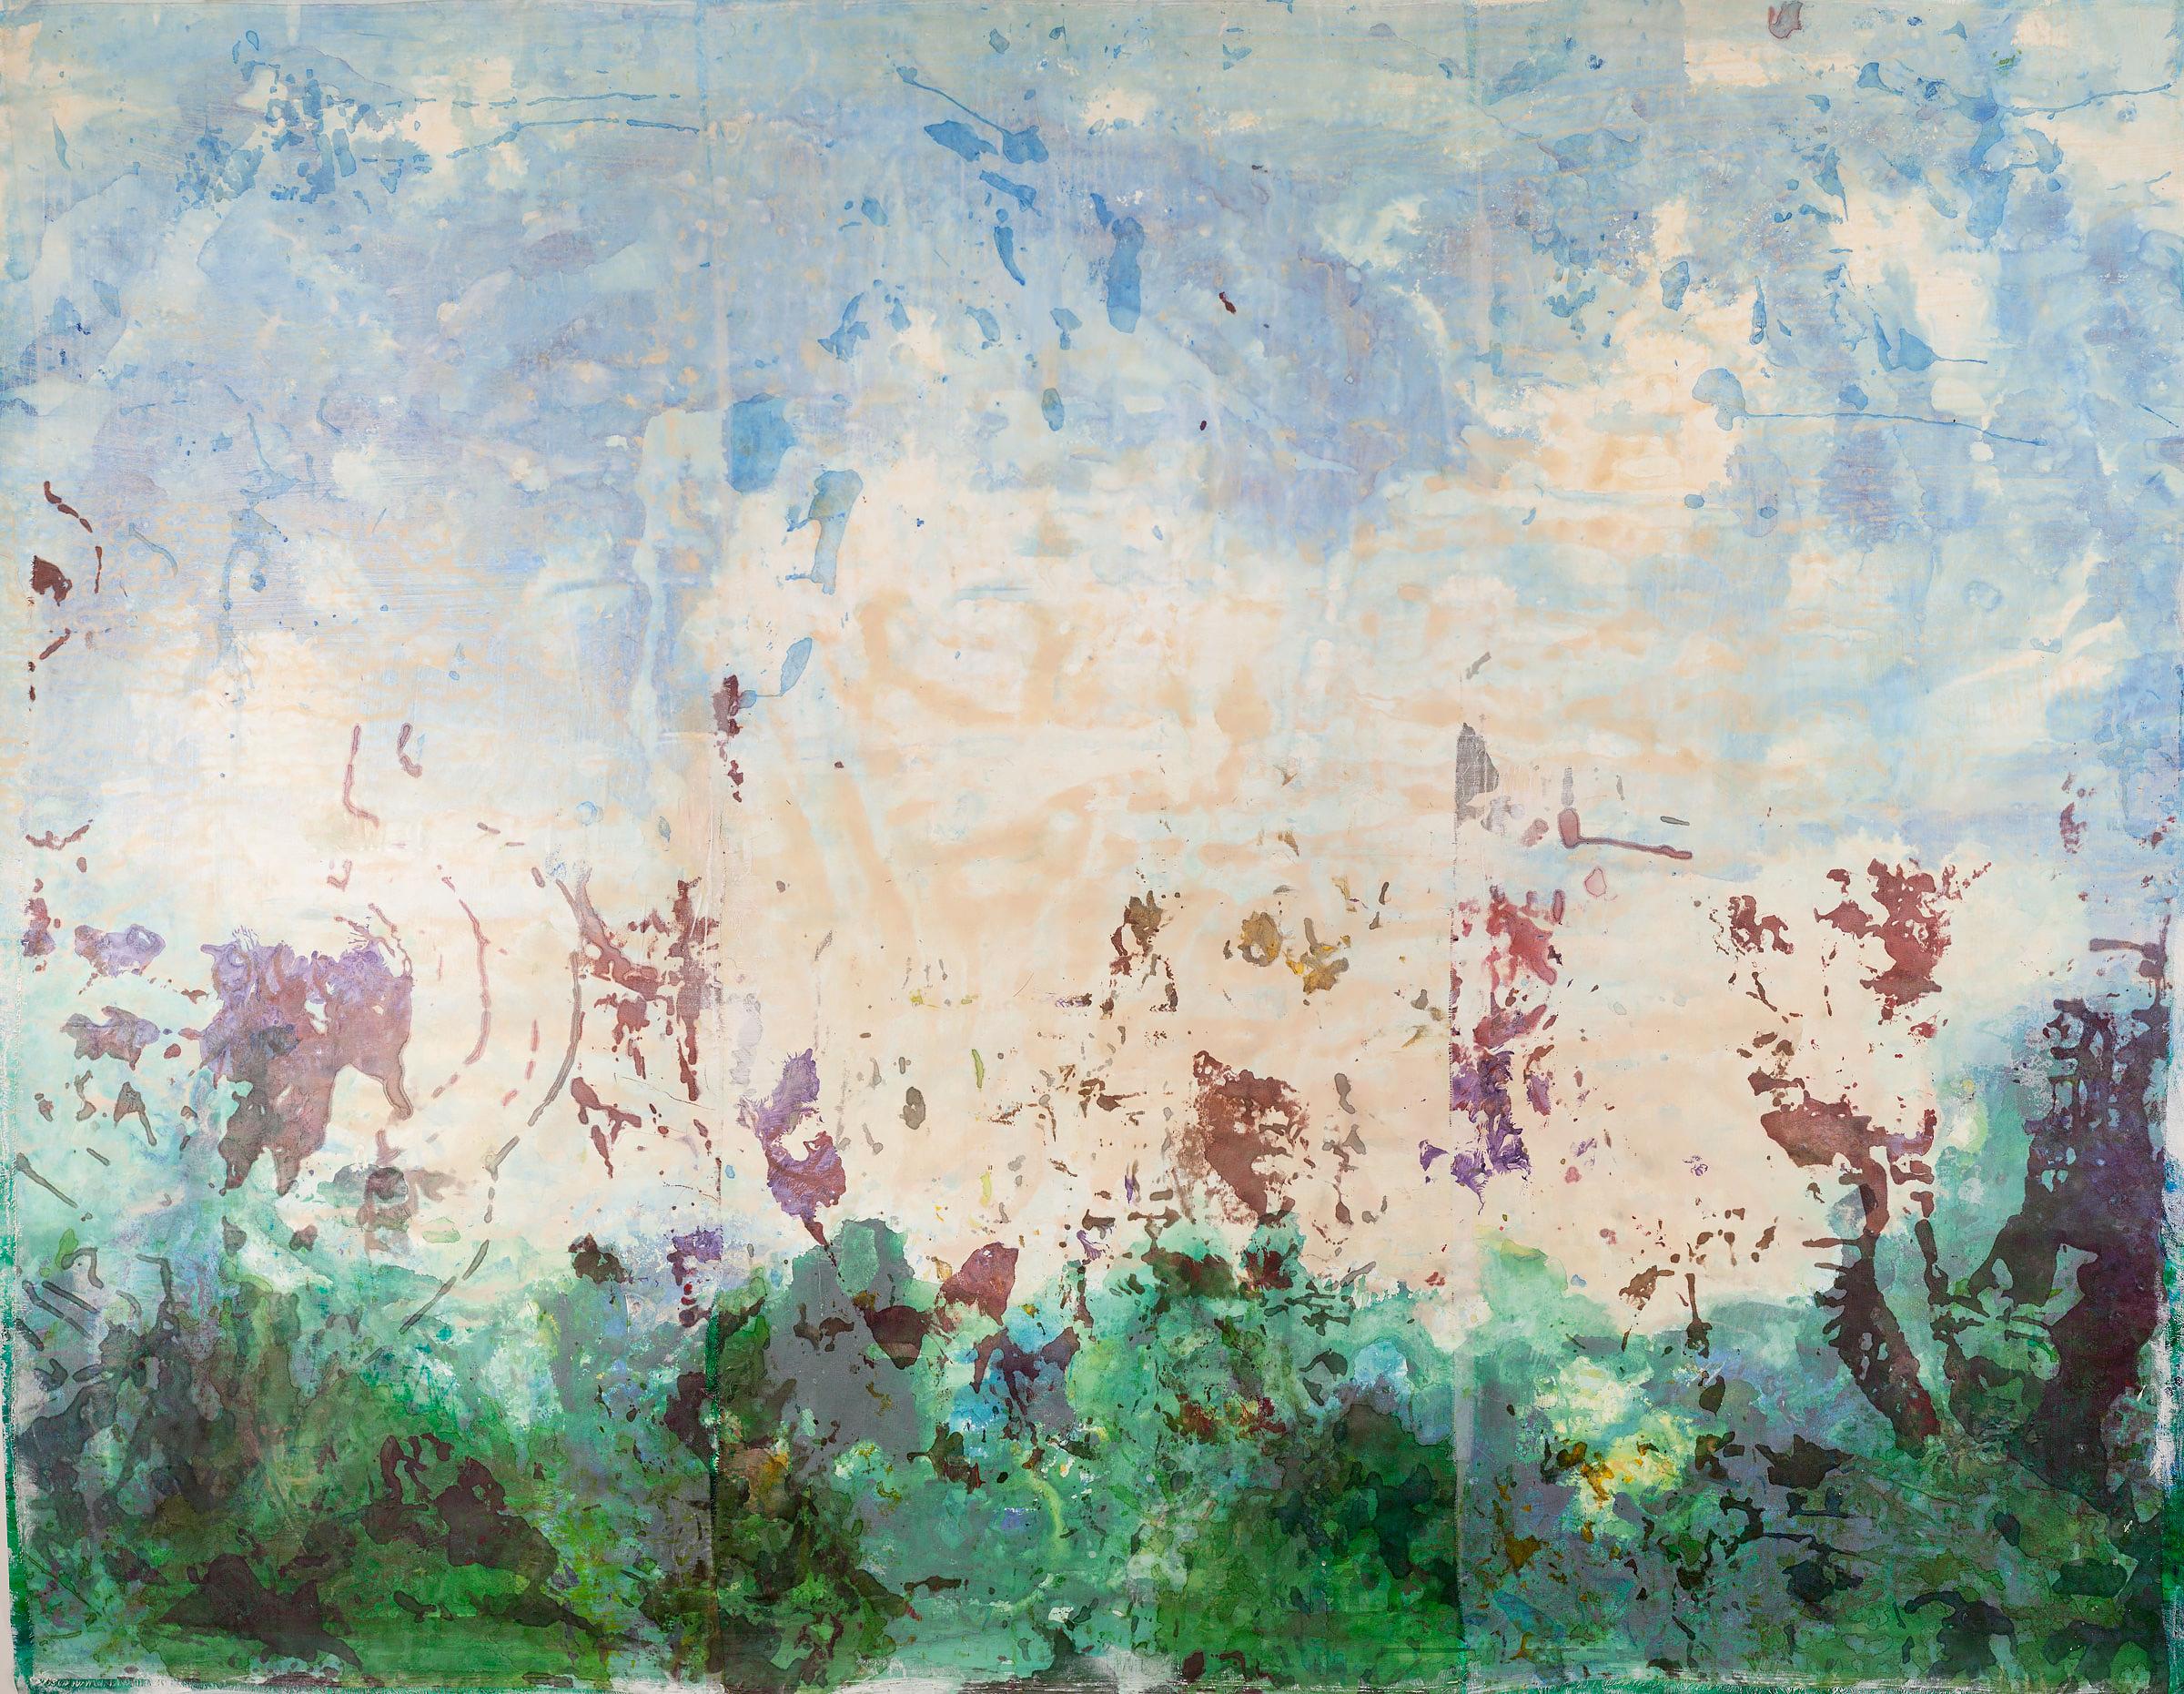 Monica Angle Abstract Painting – Zeitgenössisches amerikanisches abstrakt-expressionistisches Landschaftsgemälde, Japanischer Siebdruck